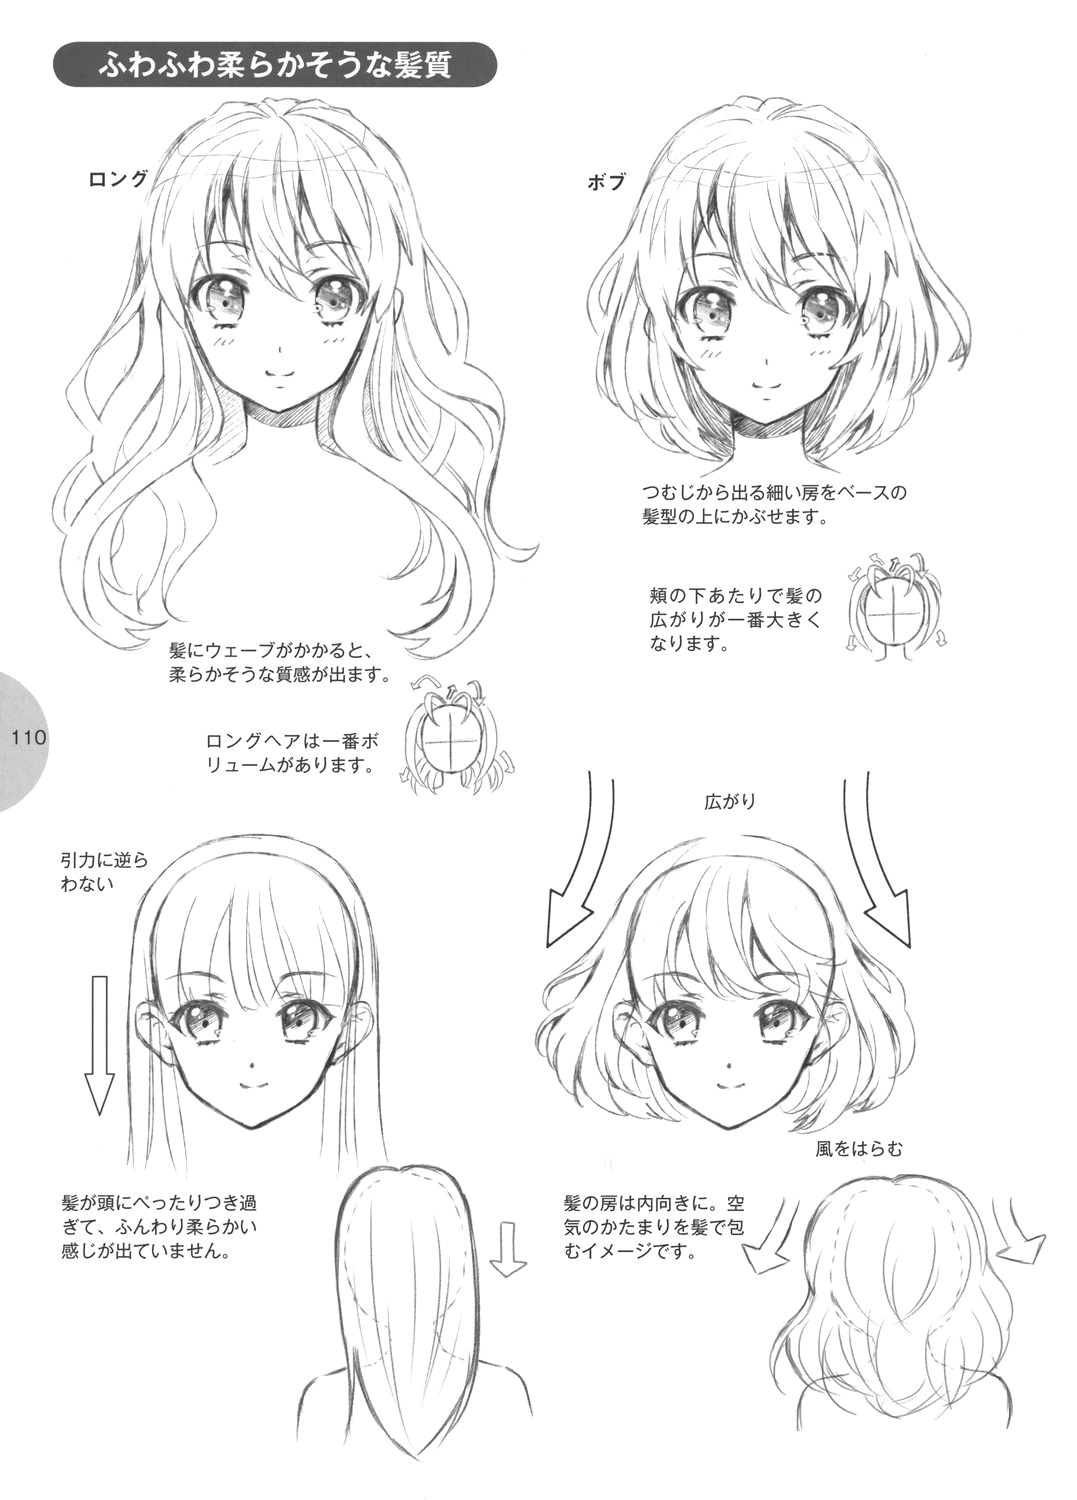 Drawing Anime Help Tutorial Hair Art Tutorial Help In 2018 Pinterest Drawings